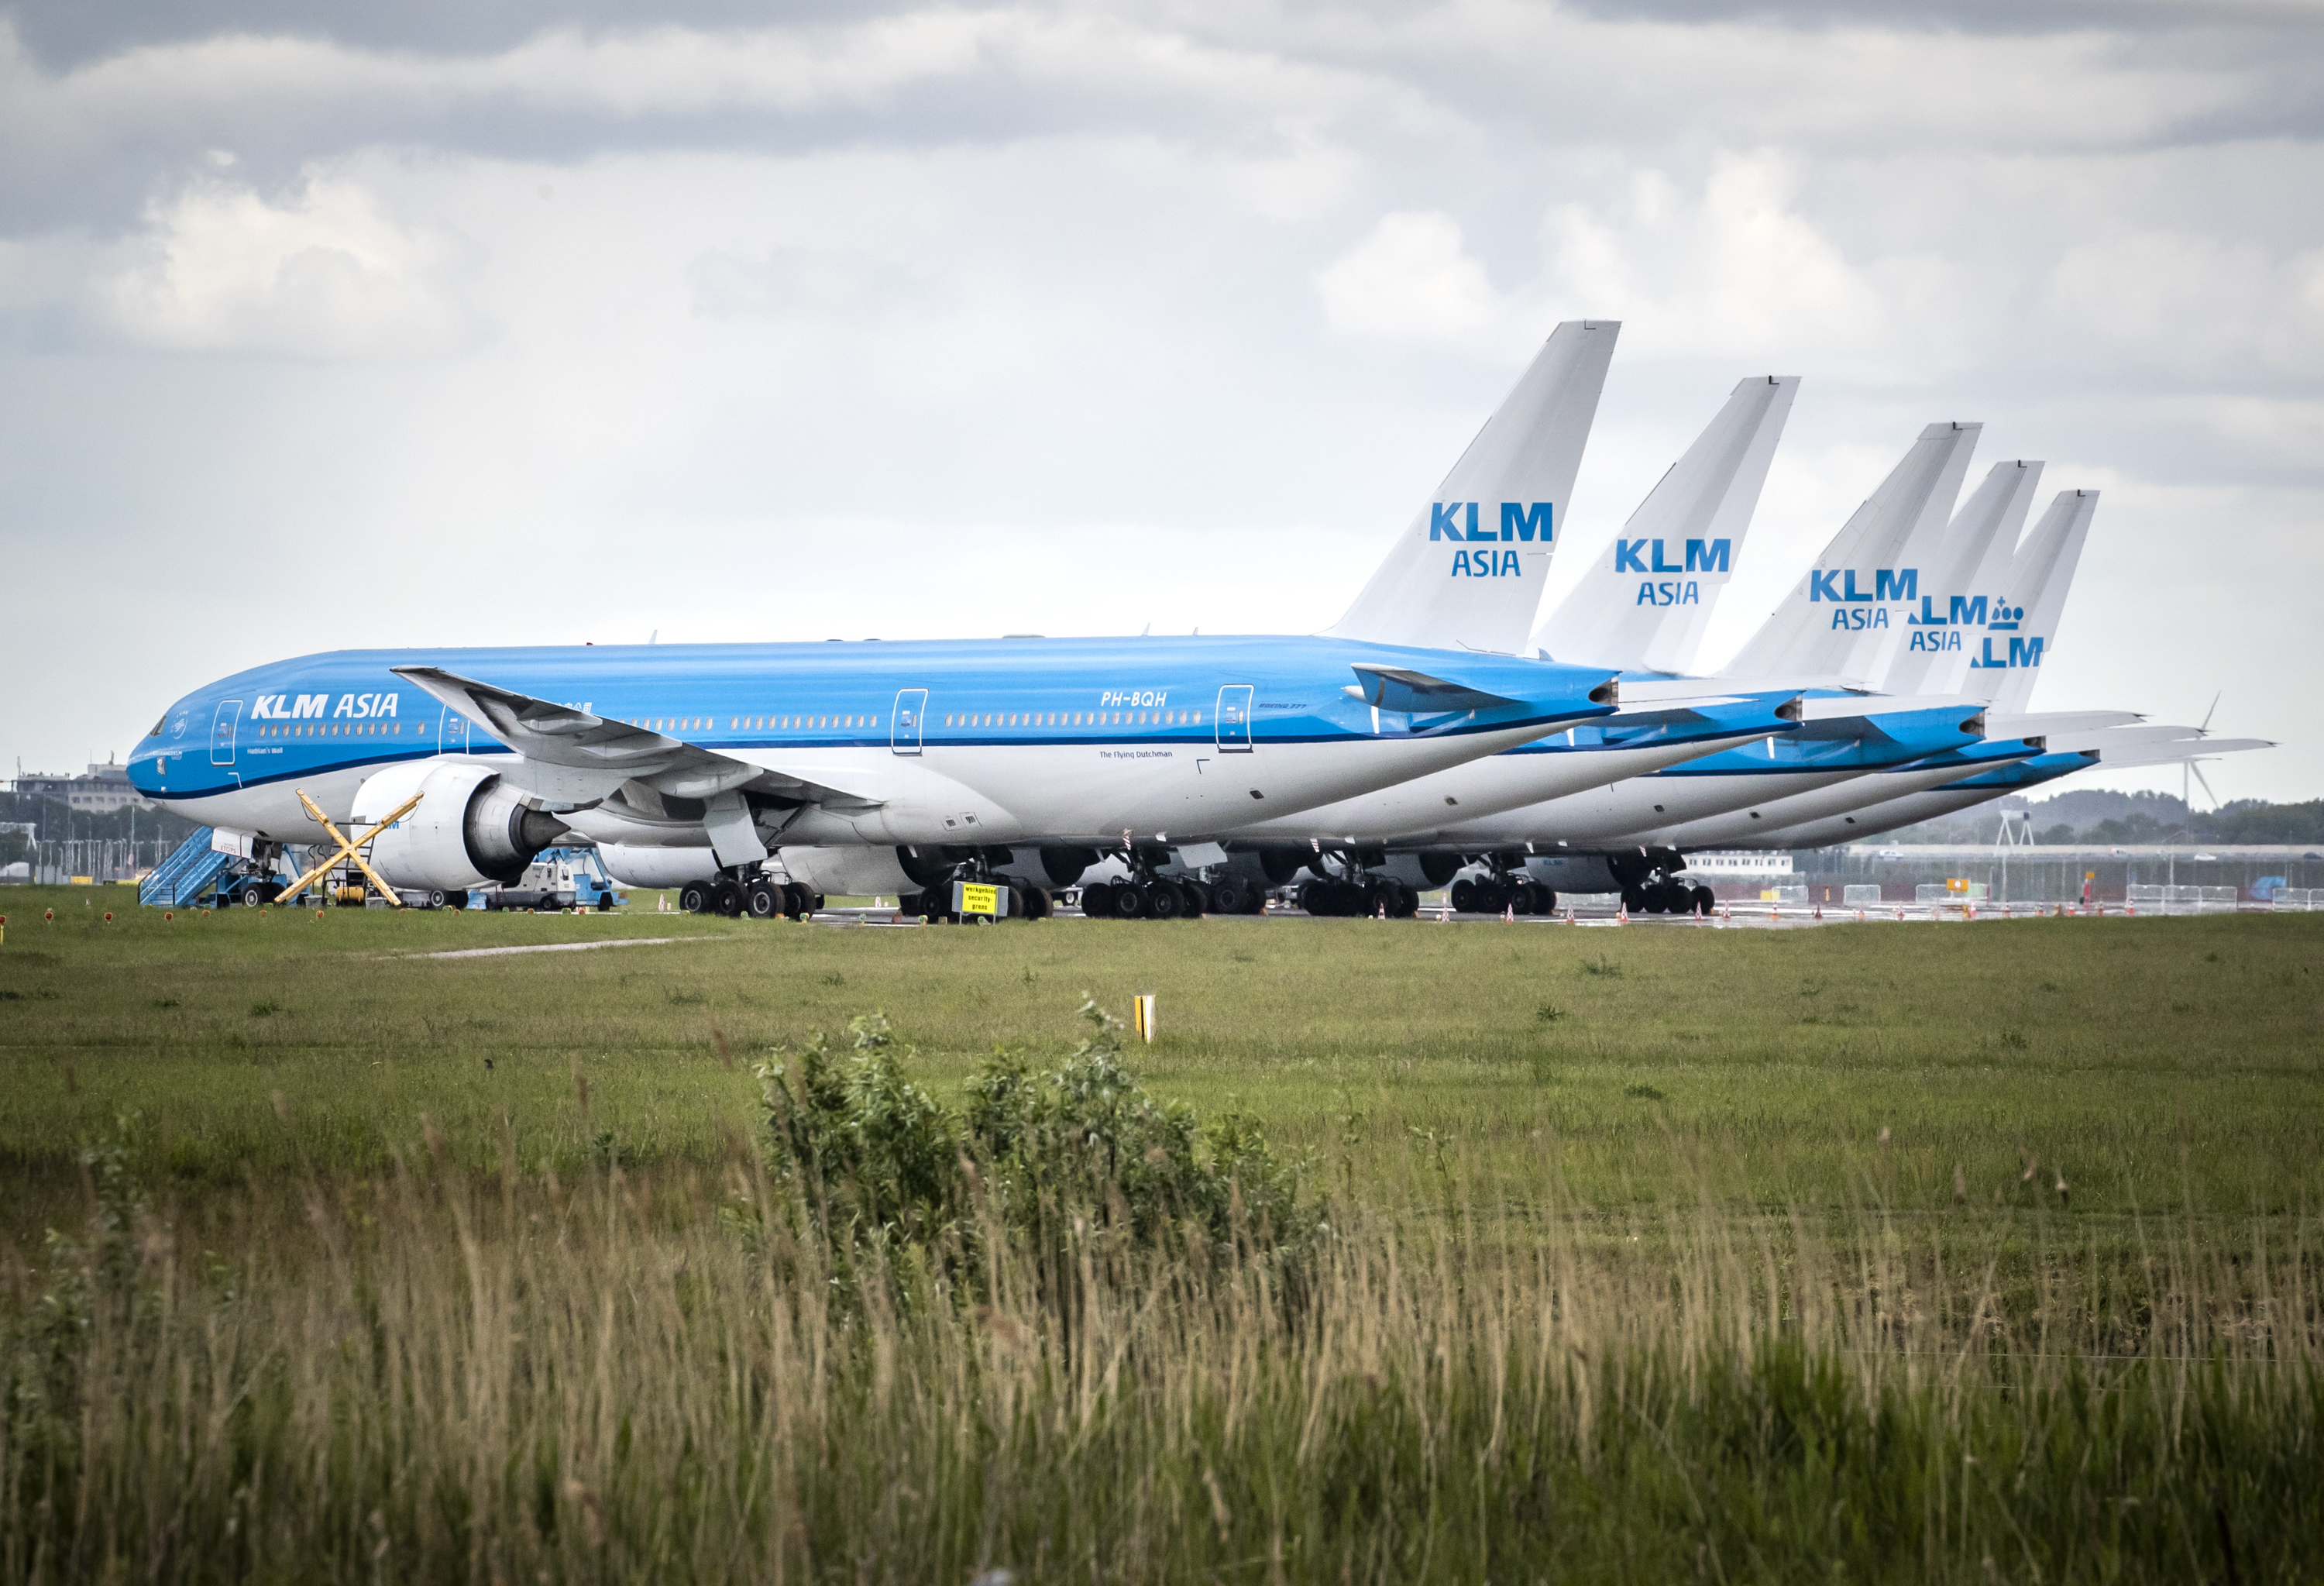 KLM toestellen staan aan de grond